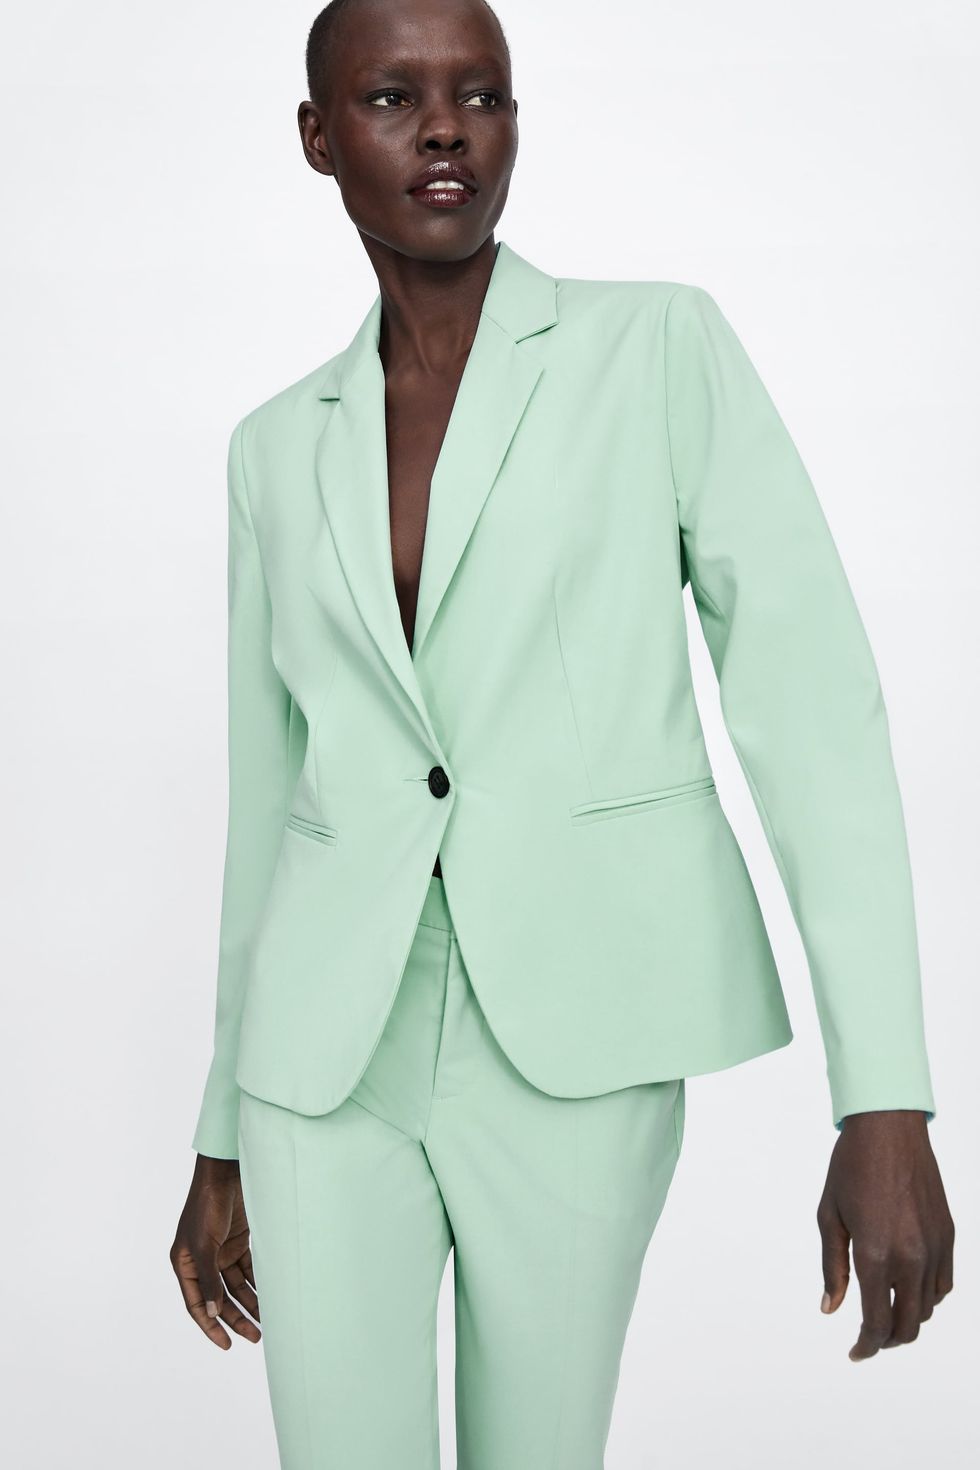 El traje de mujer de Zara más vendido de la temporada es de color mint es  también el más barato, según una empleada de la tienda